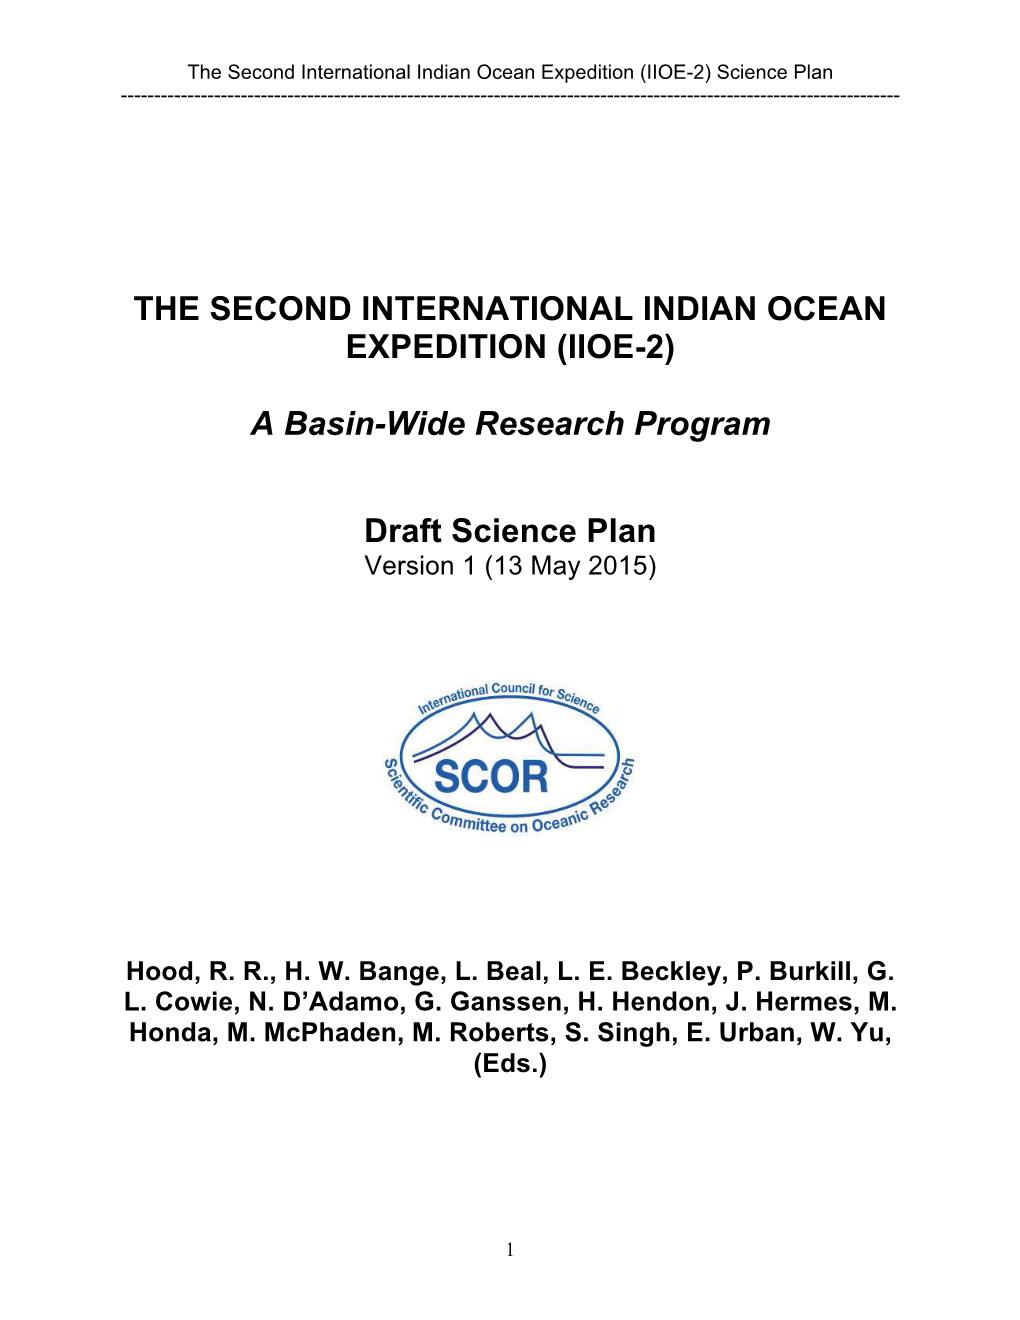 (IIOE-2) a Basin-Wide Research Program Draft Science Plan